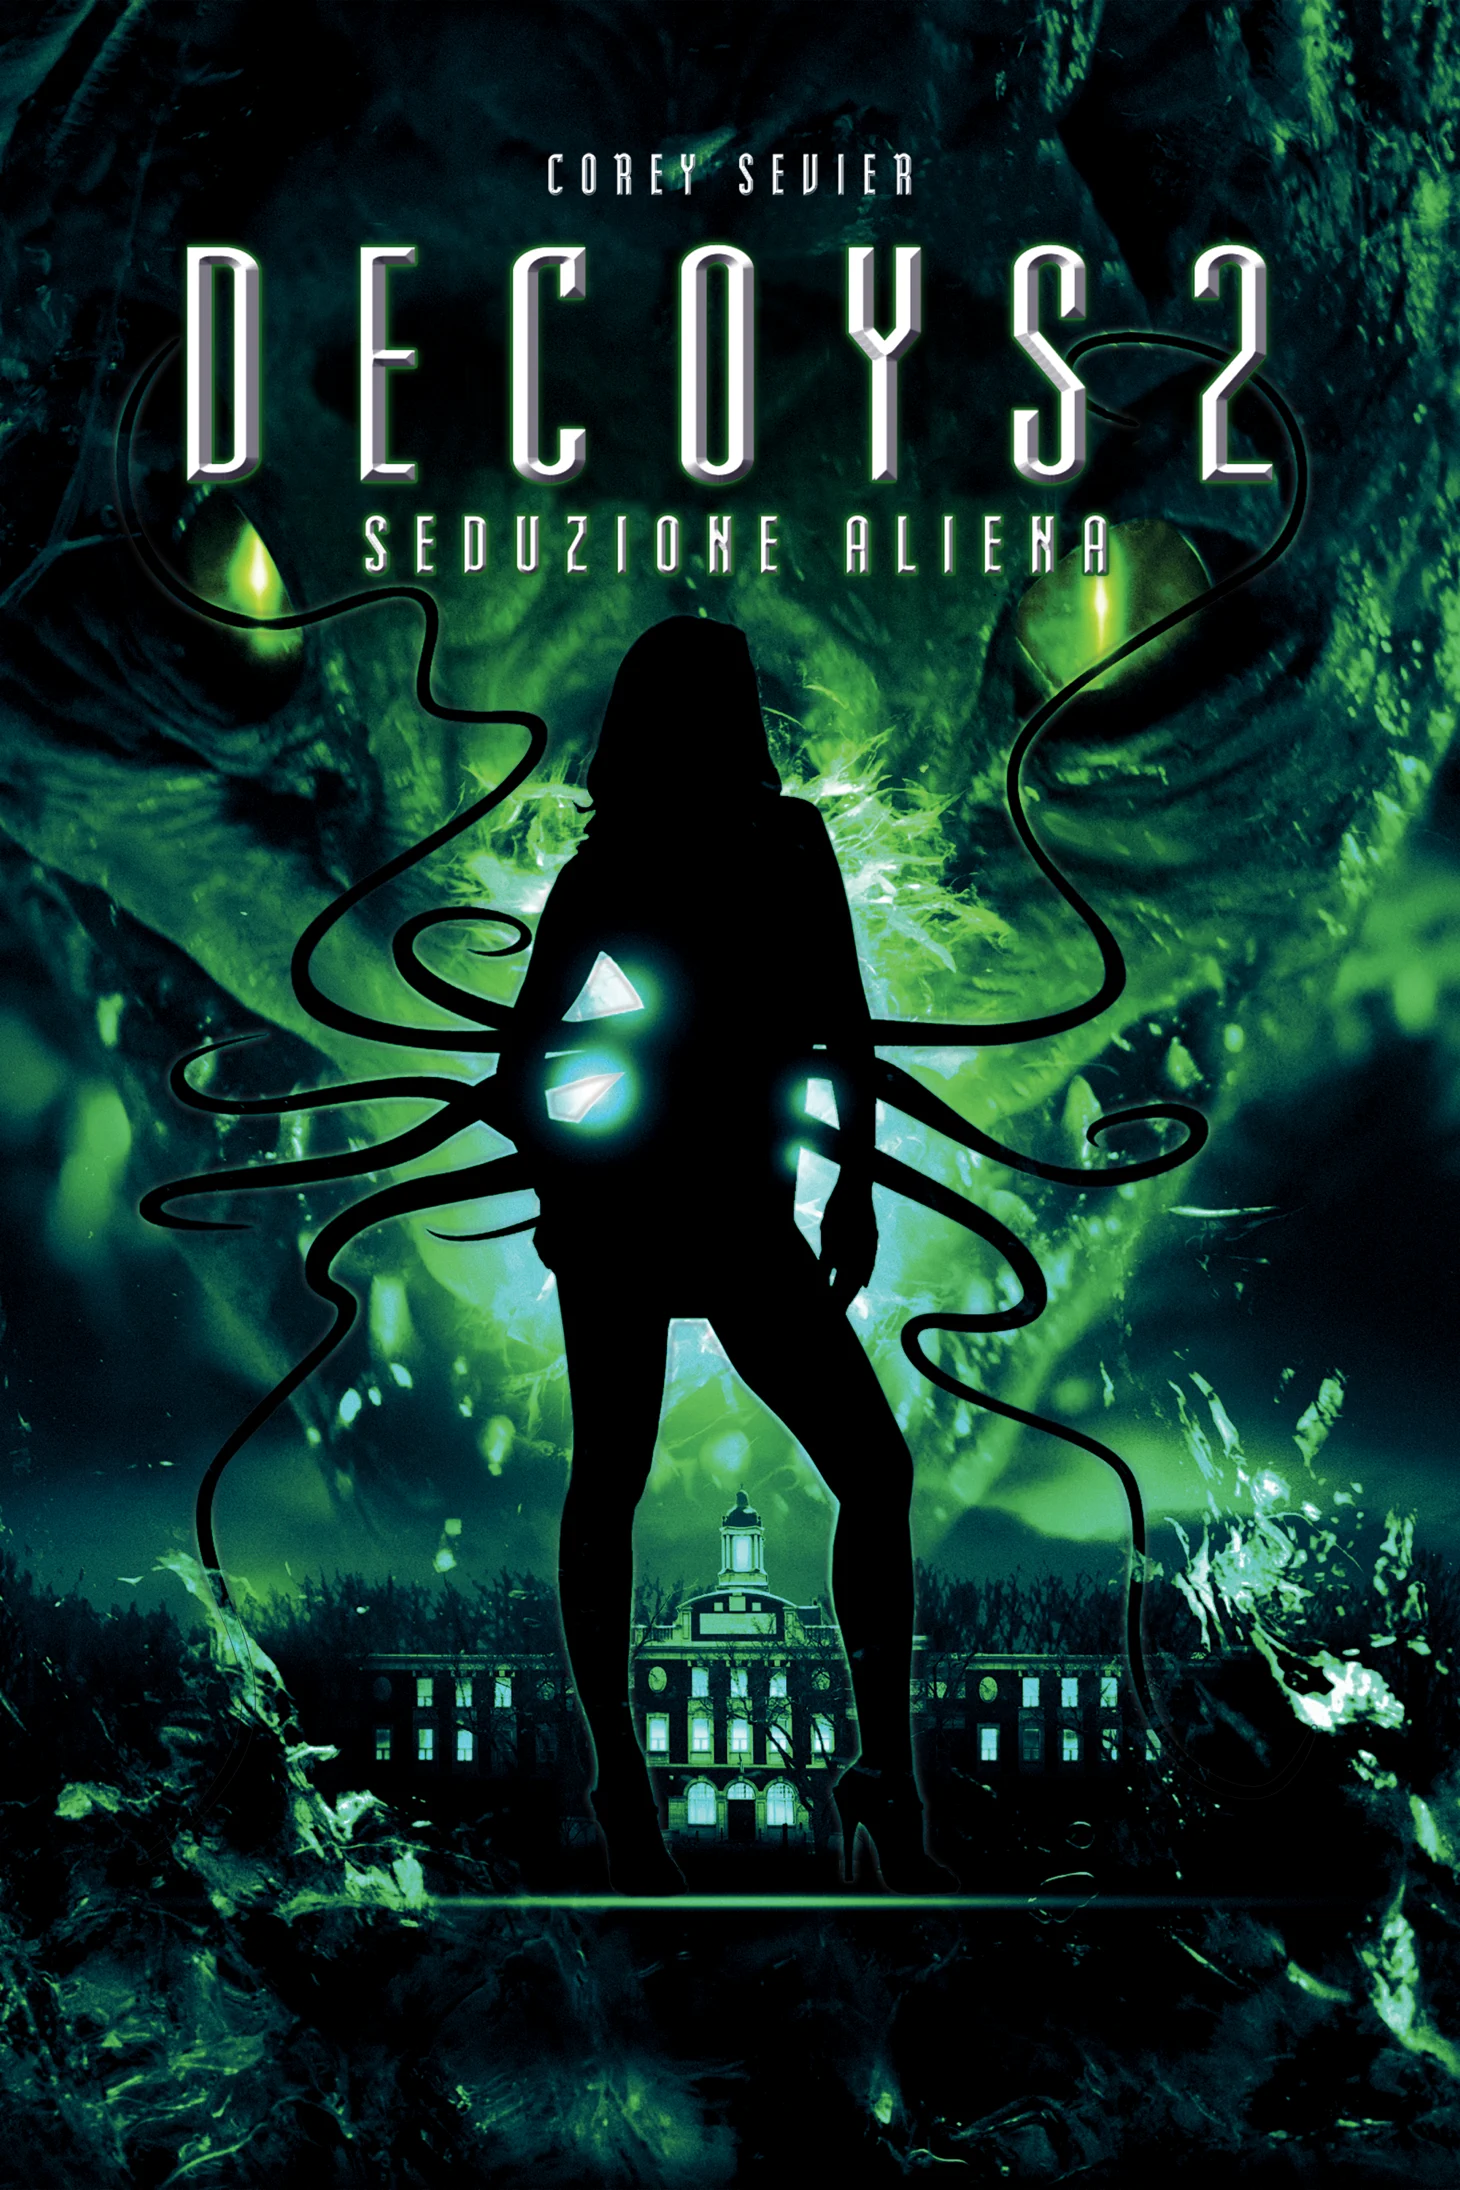 Decoys 2 – Seduzione aliena (2007)